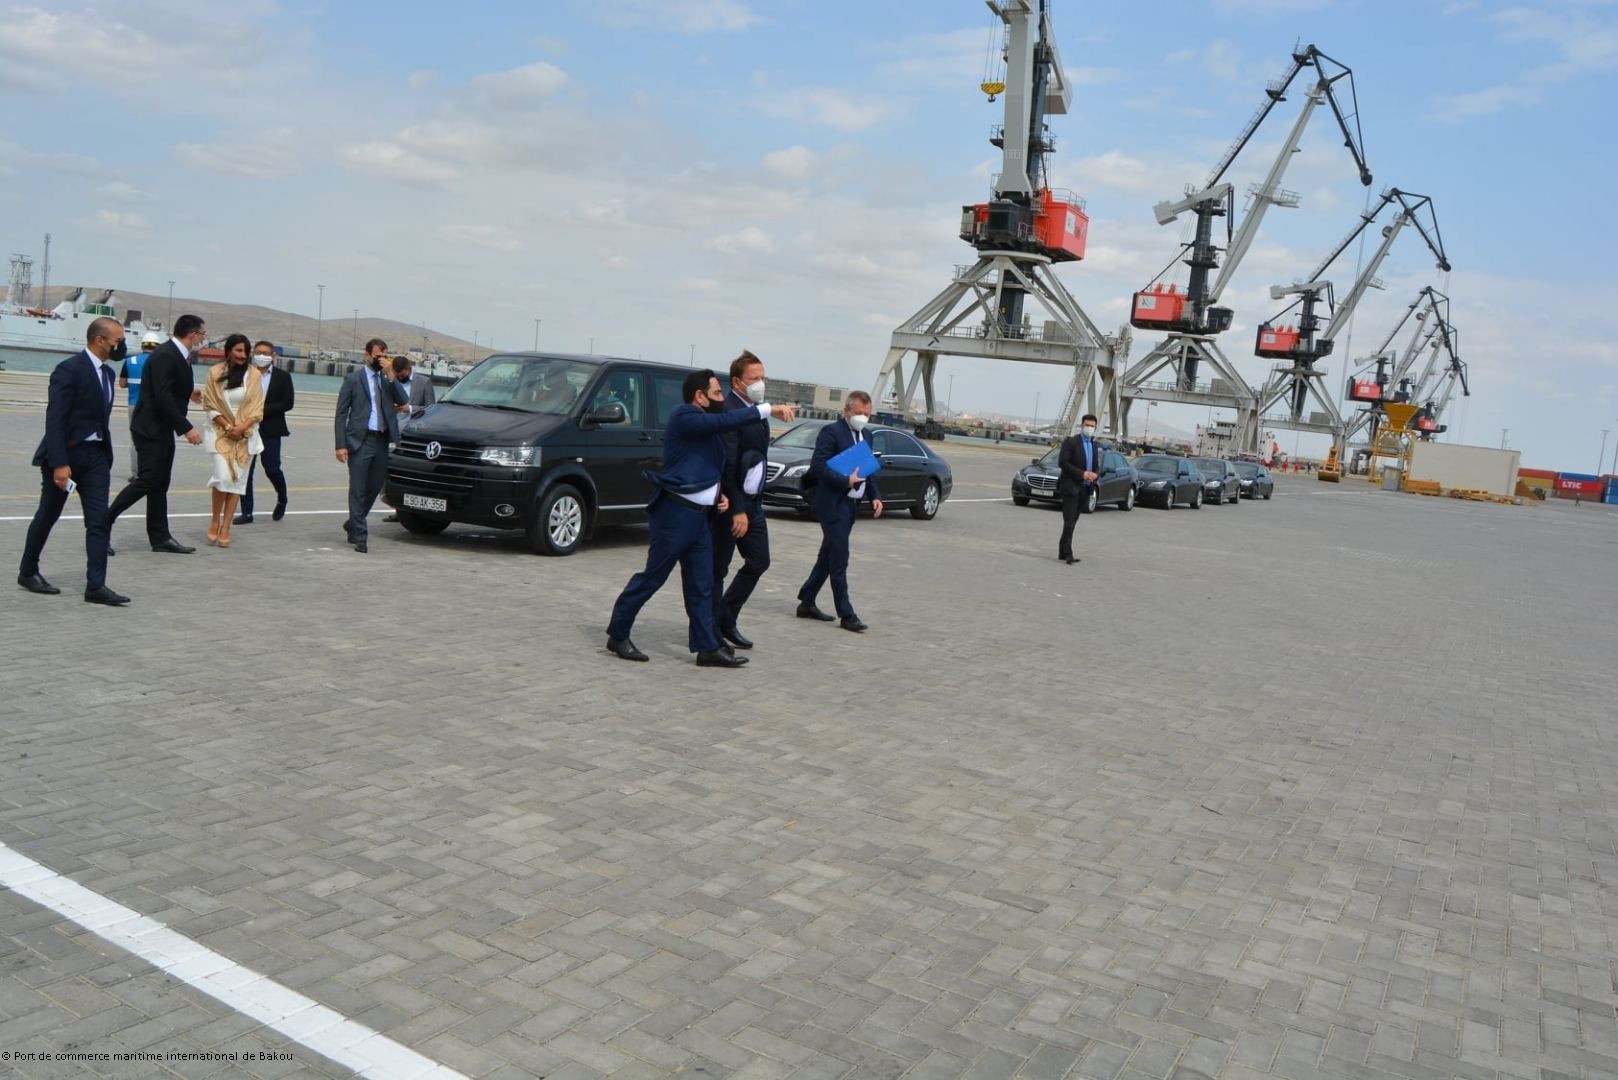 L'Union européenne est prête à investir dans un certain nombre de projets portuaires à Bakou